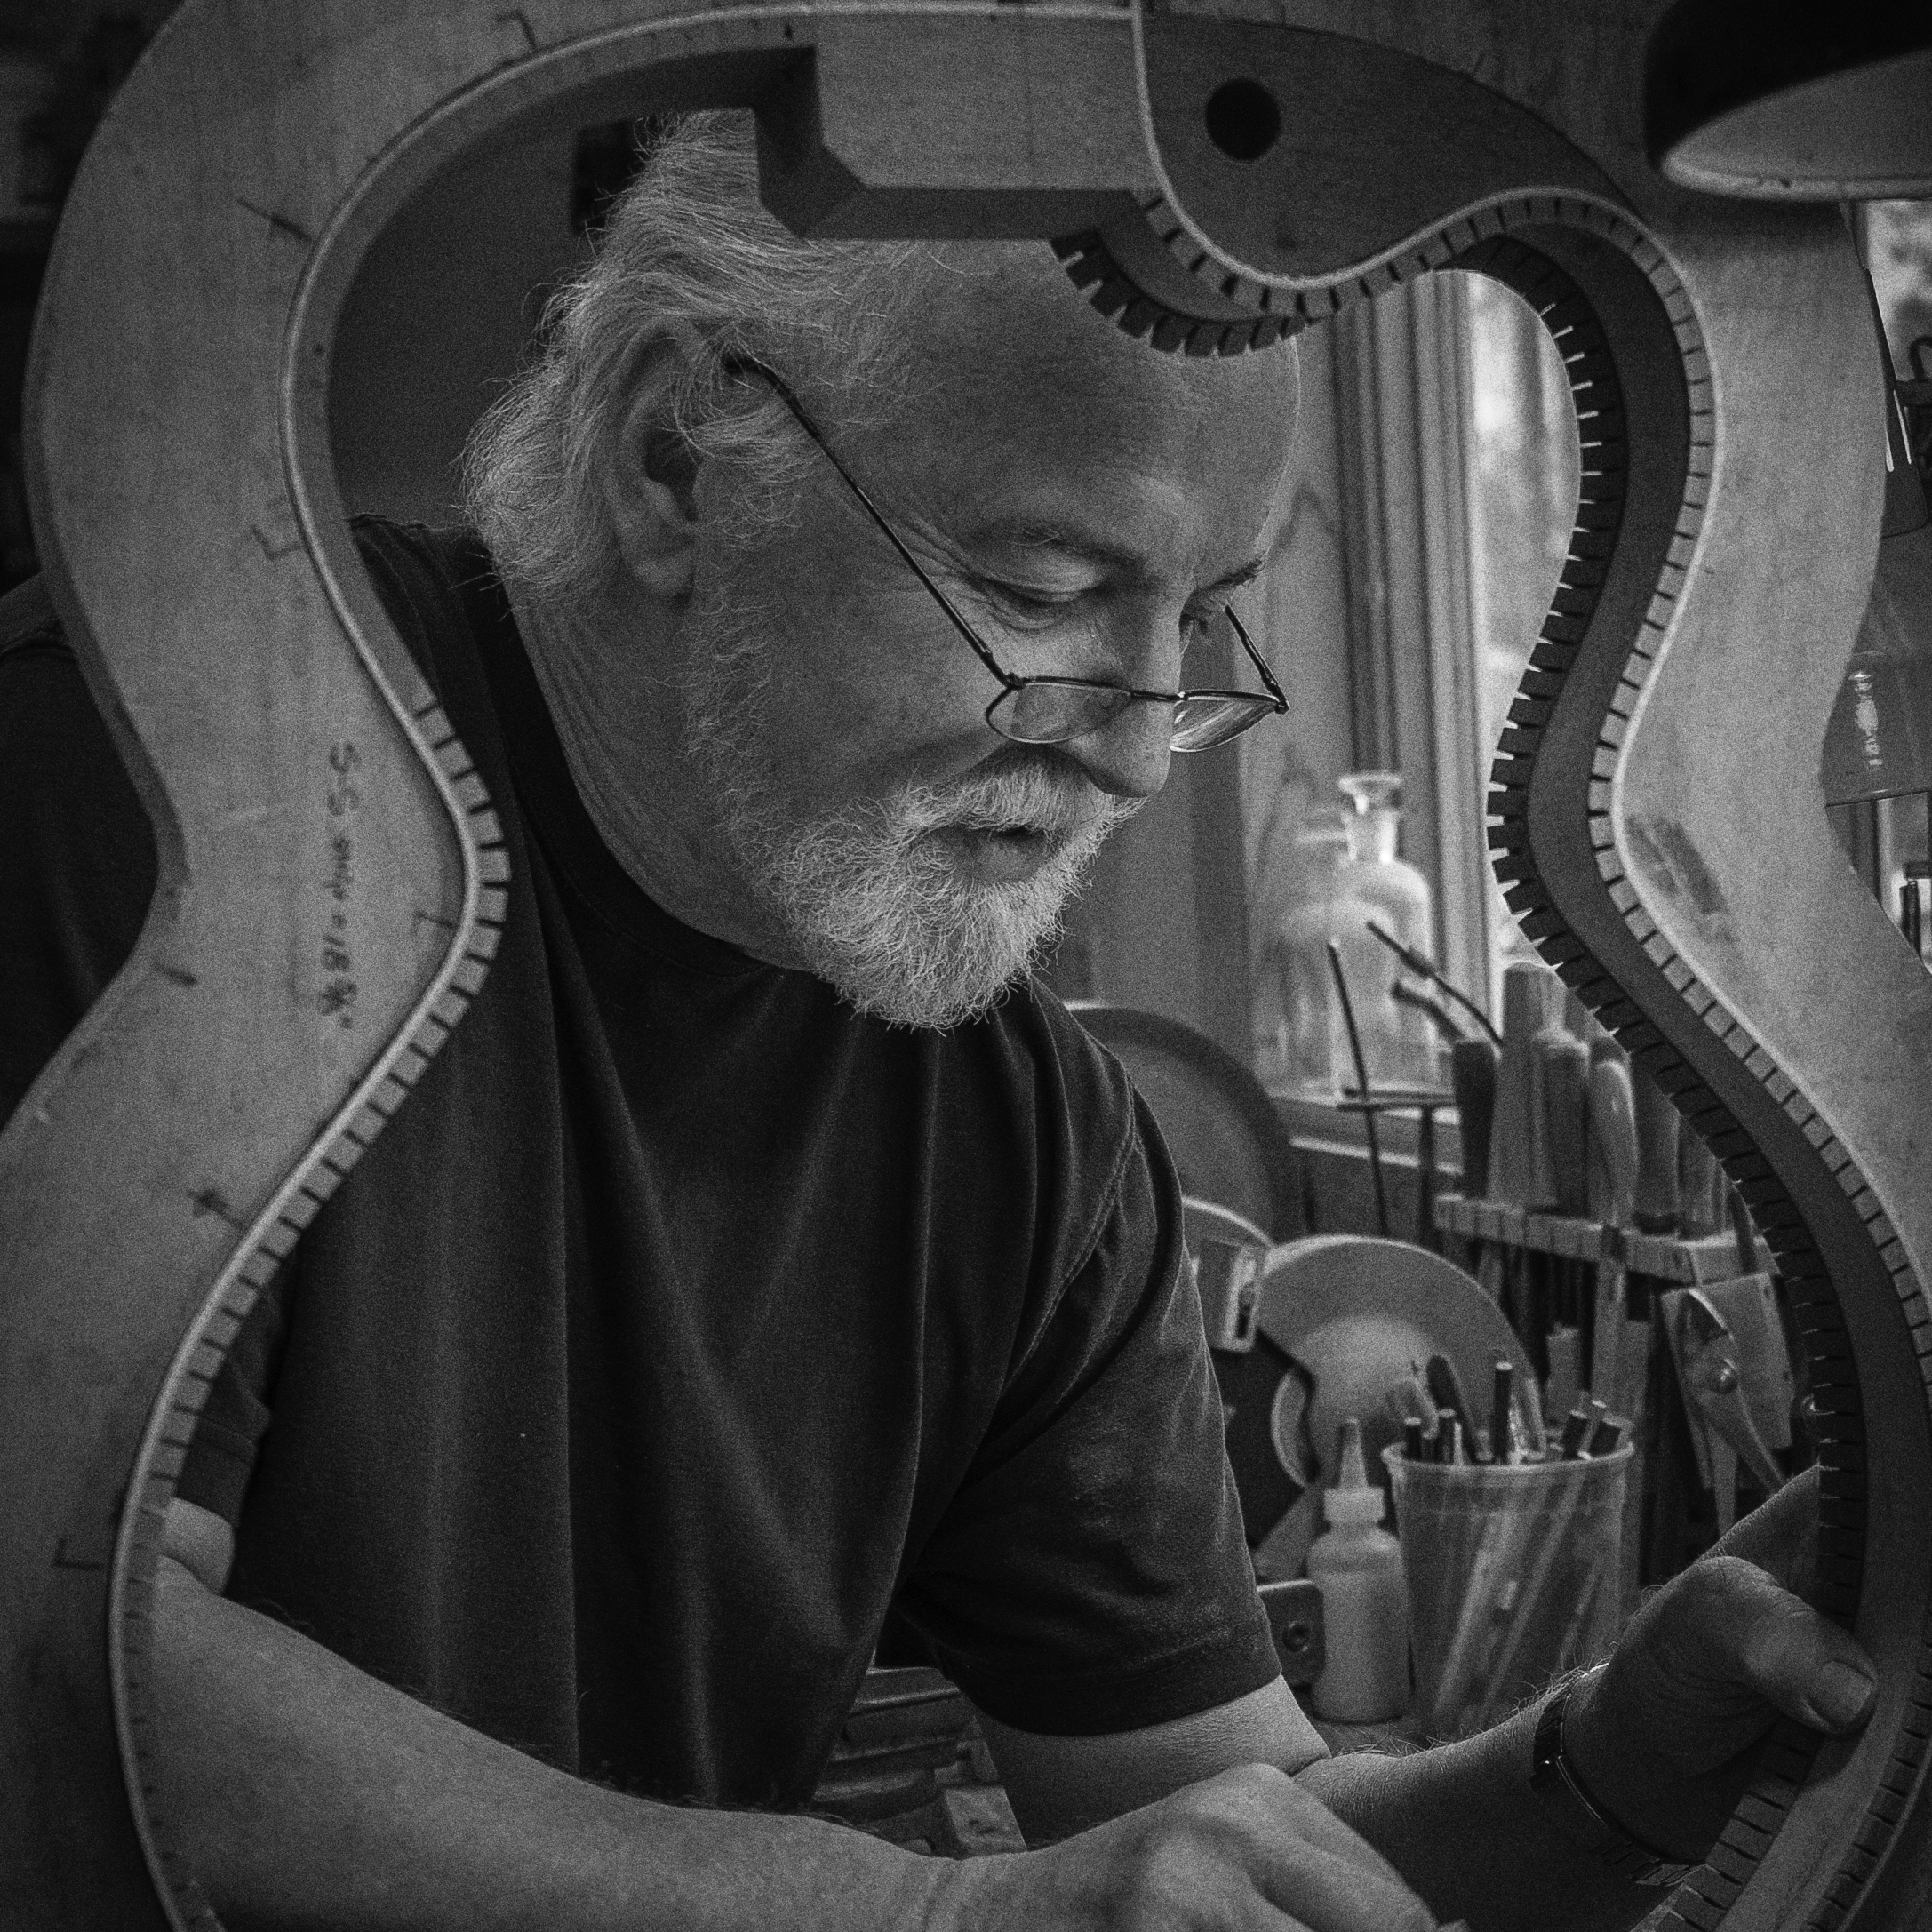 Image of guitar-maker John Monteleone